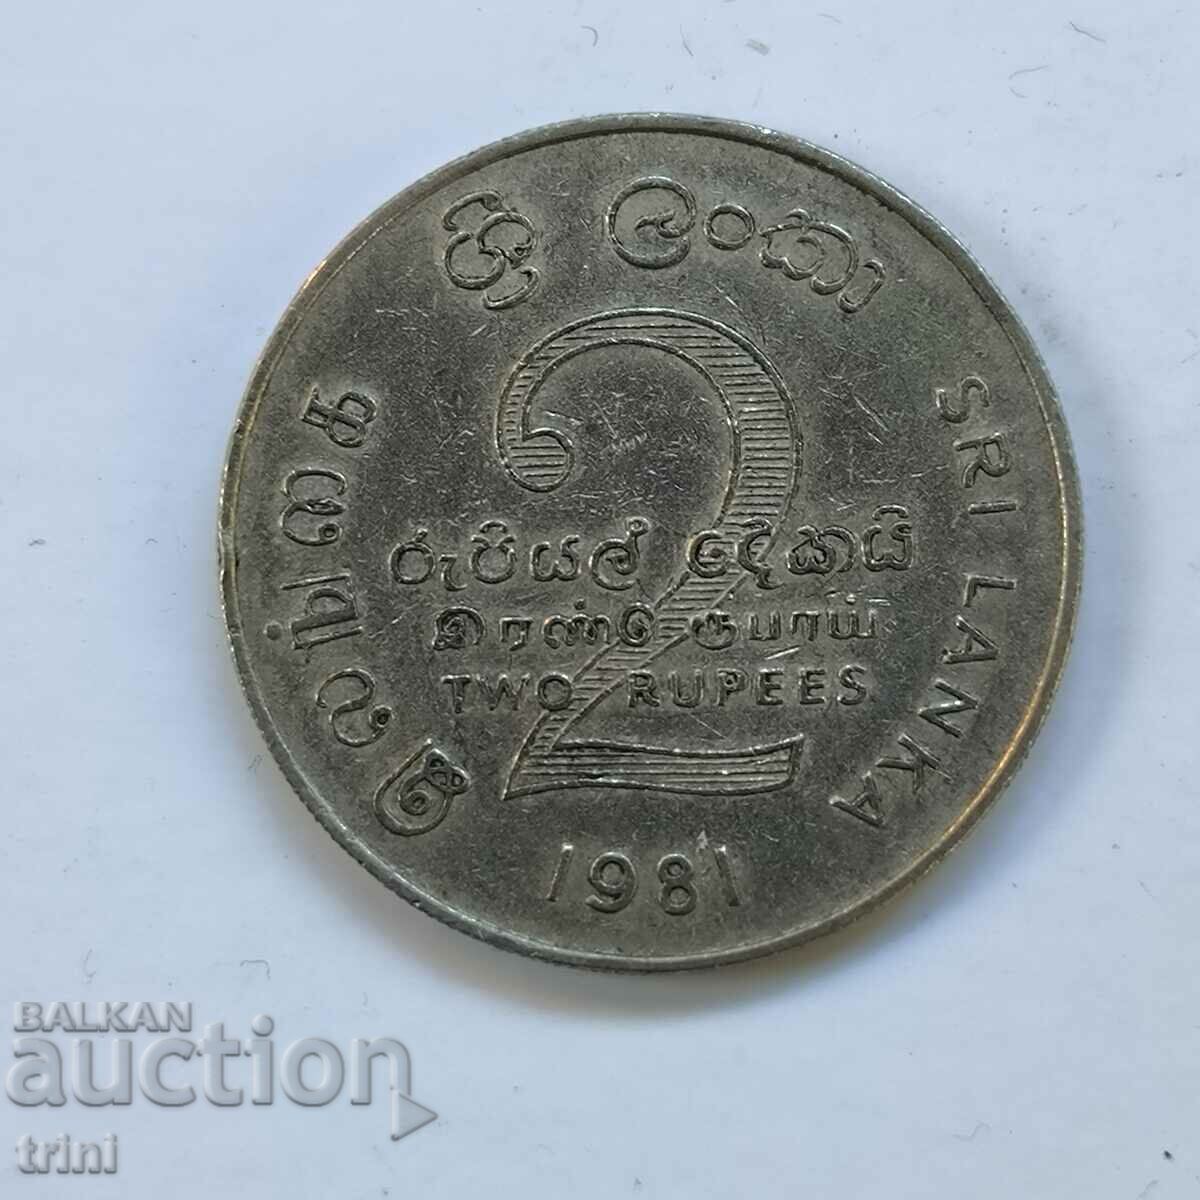 Sri Lanka 2 Rupees 1981 FAO